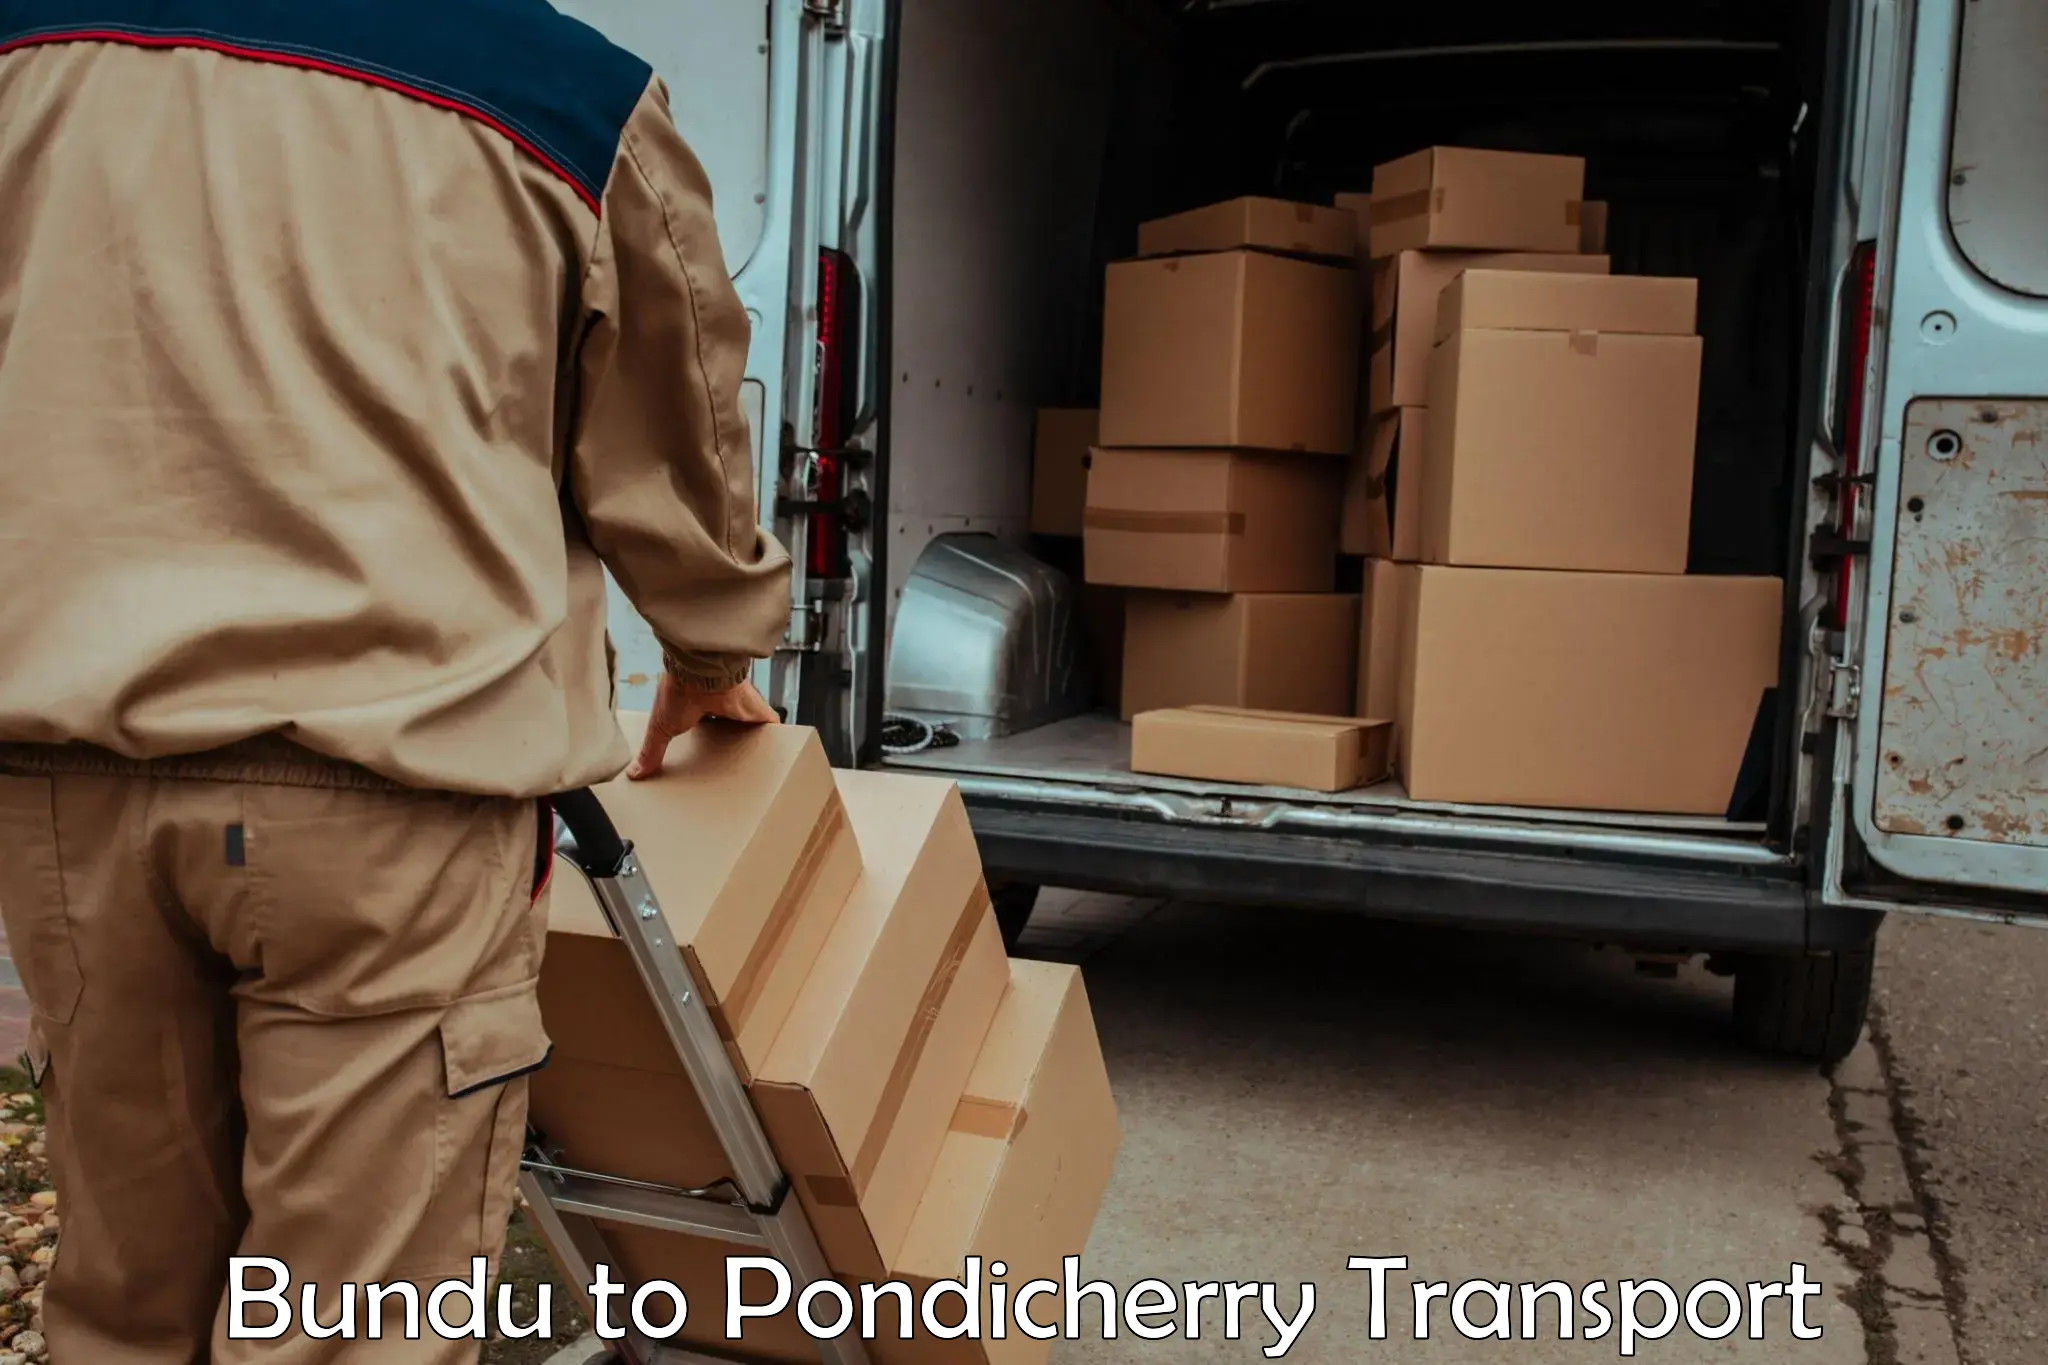 Land transport services Bundu to Pondicherry